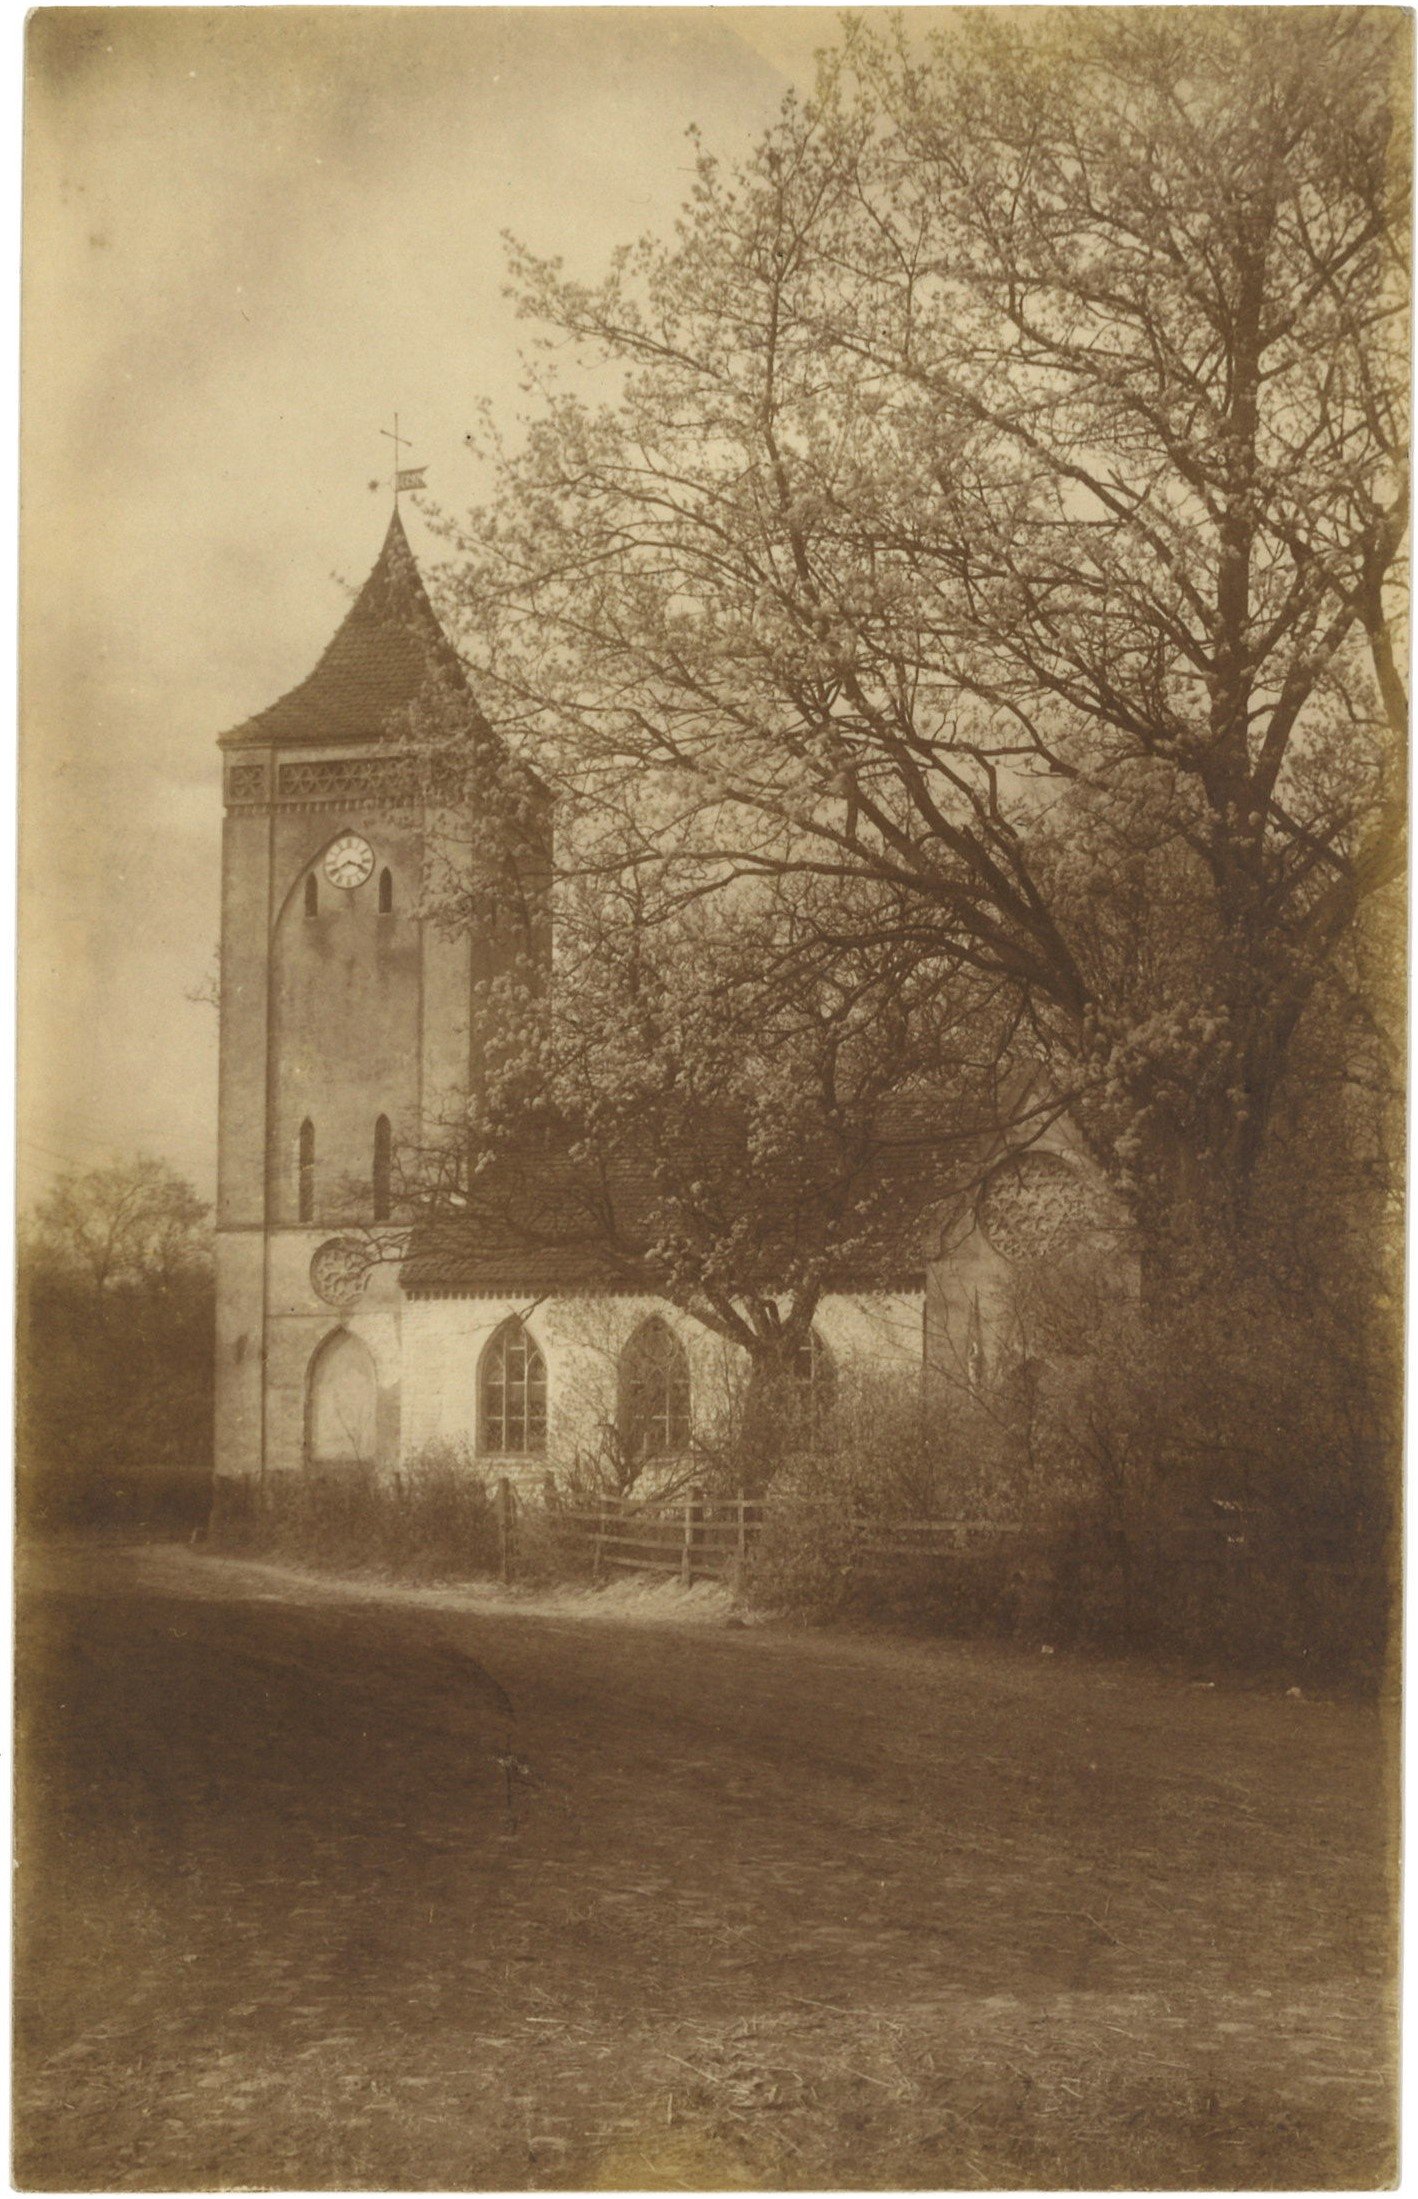 Paretz (Kr. Osthavelland): Dorfkirche von Süden (Landesgeschichtliche Vereinigung für die Mark Brandenburg e.V., Archiv CC BY)